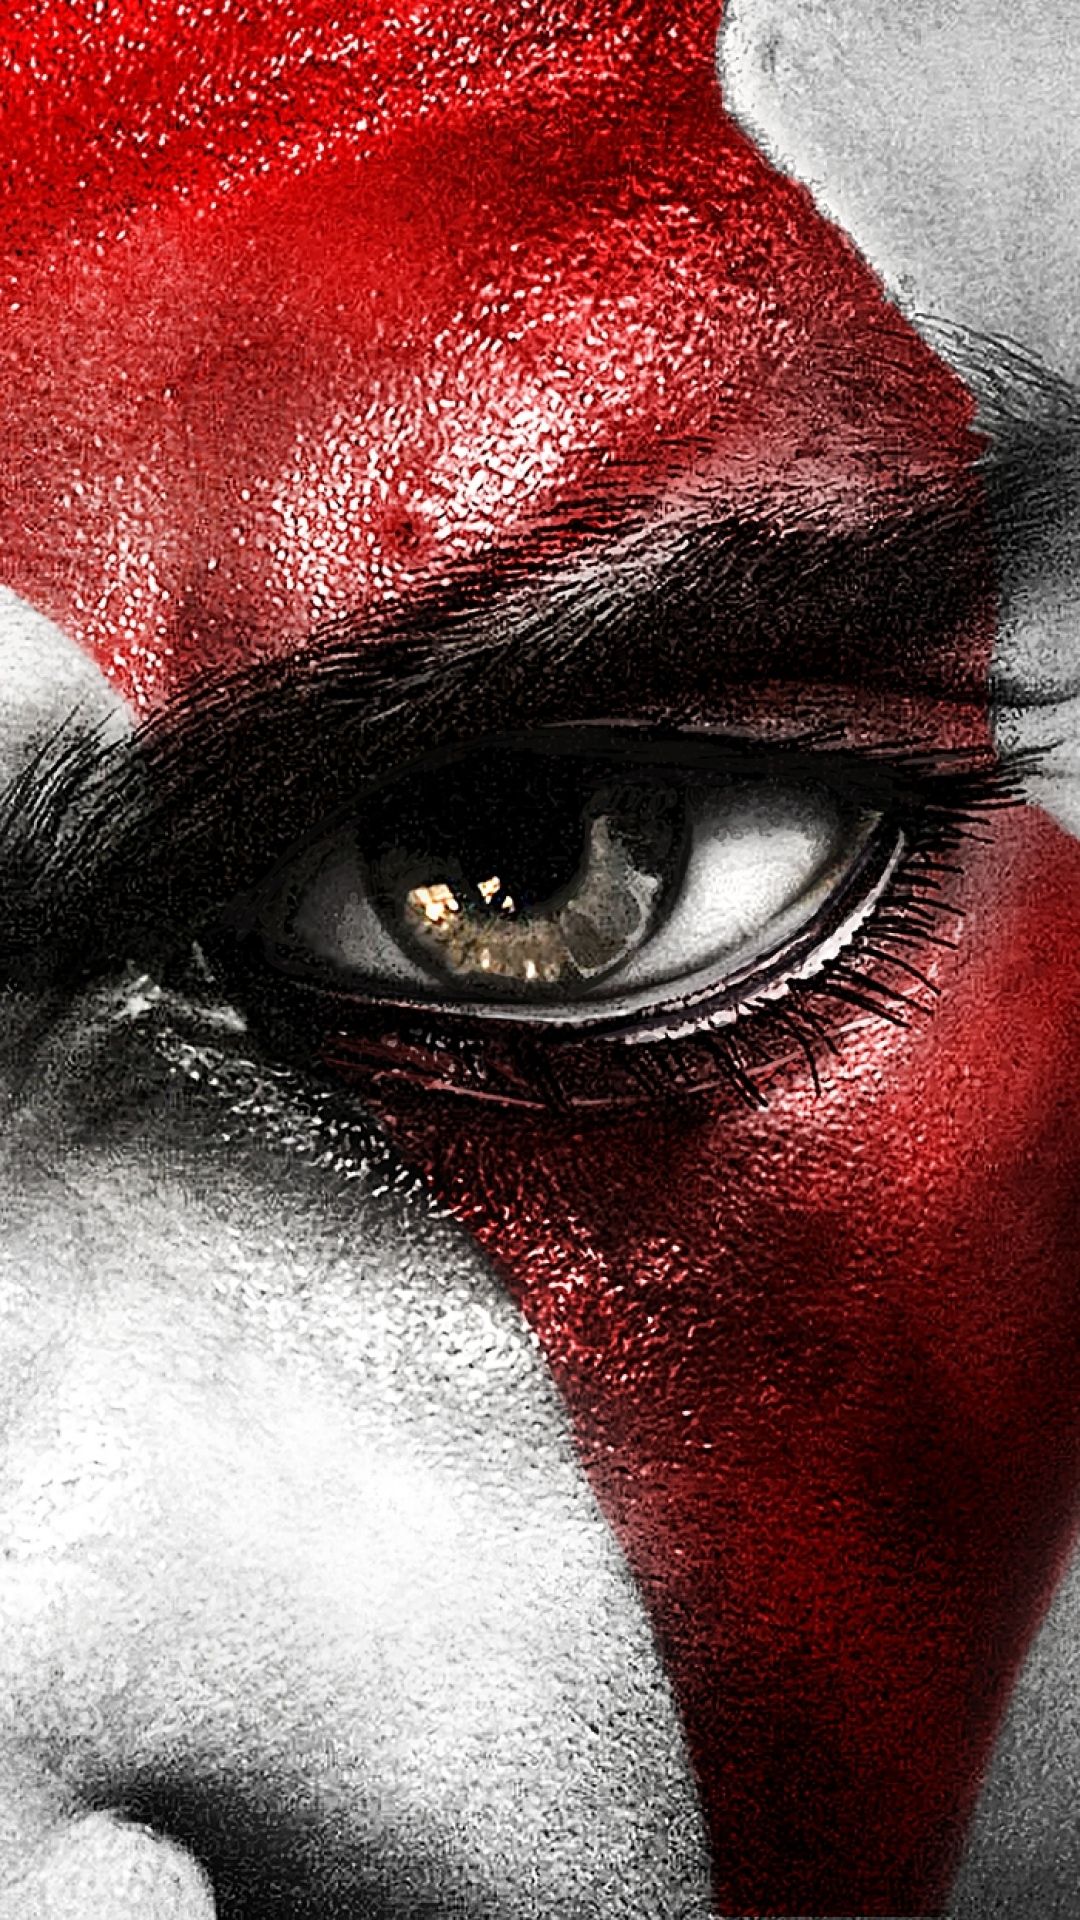 God Of War Kratos Vs Zeus Wallpaper